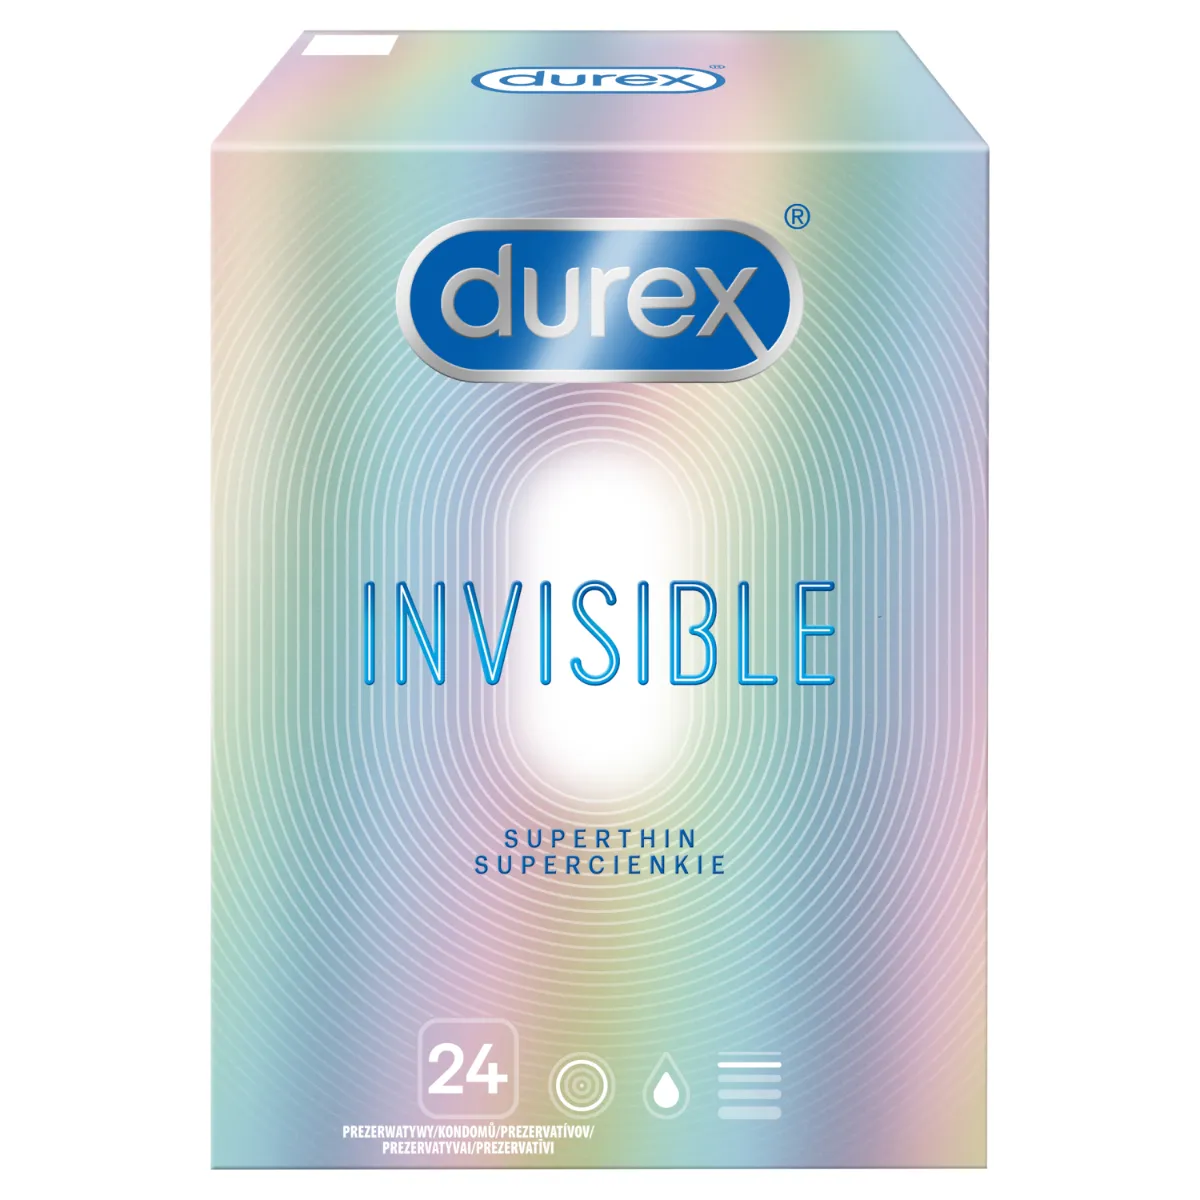 Durex Invisible, prezerwatywy, dla większej bliskości, 24 sztuki 